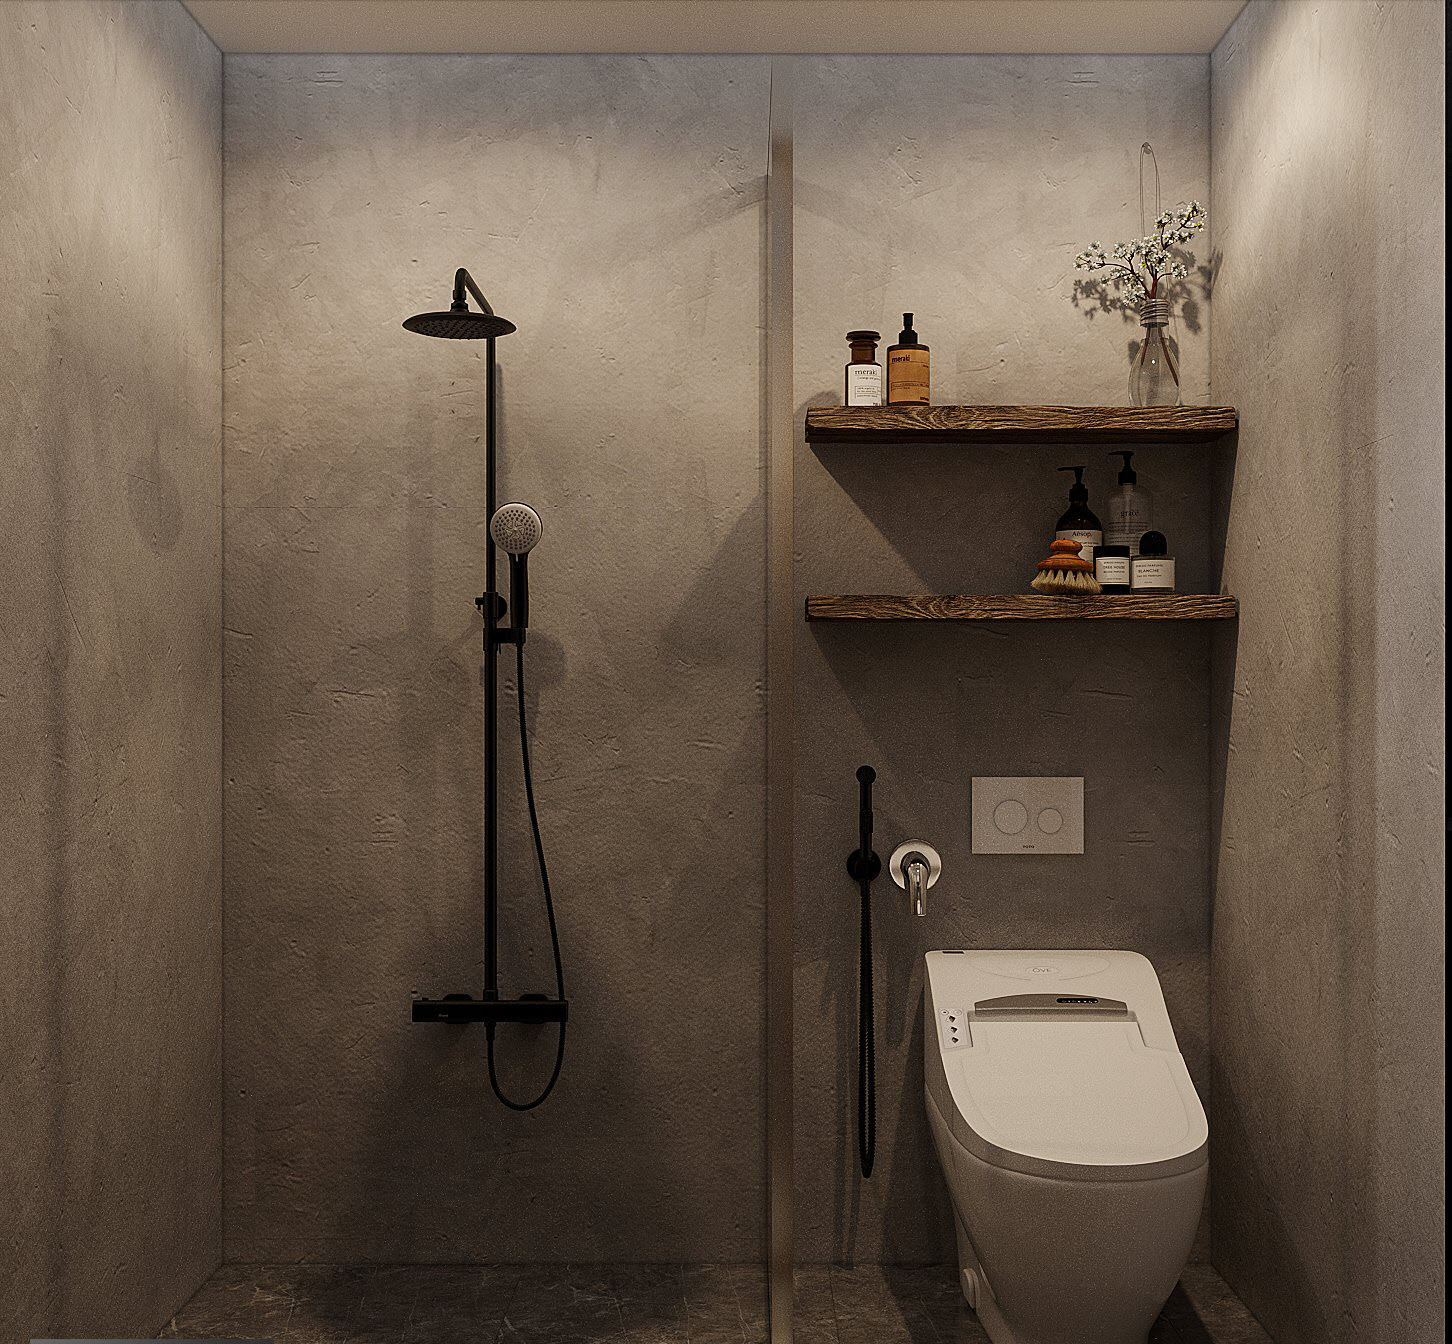 Tường bê tông xám nguyên bản làm nền cho nội thất phòng tắm hiện đại trở nên nổi bật hơn.